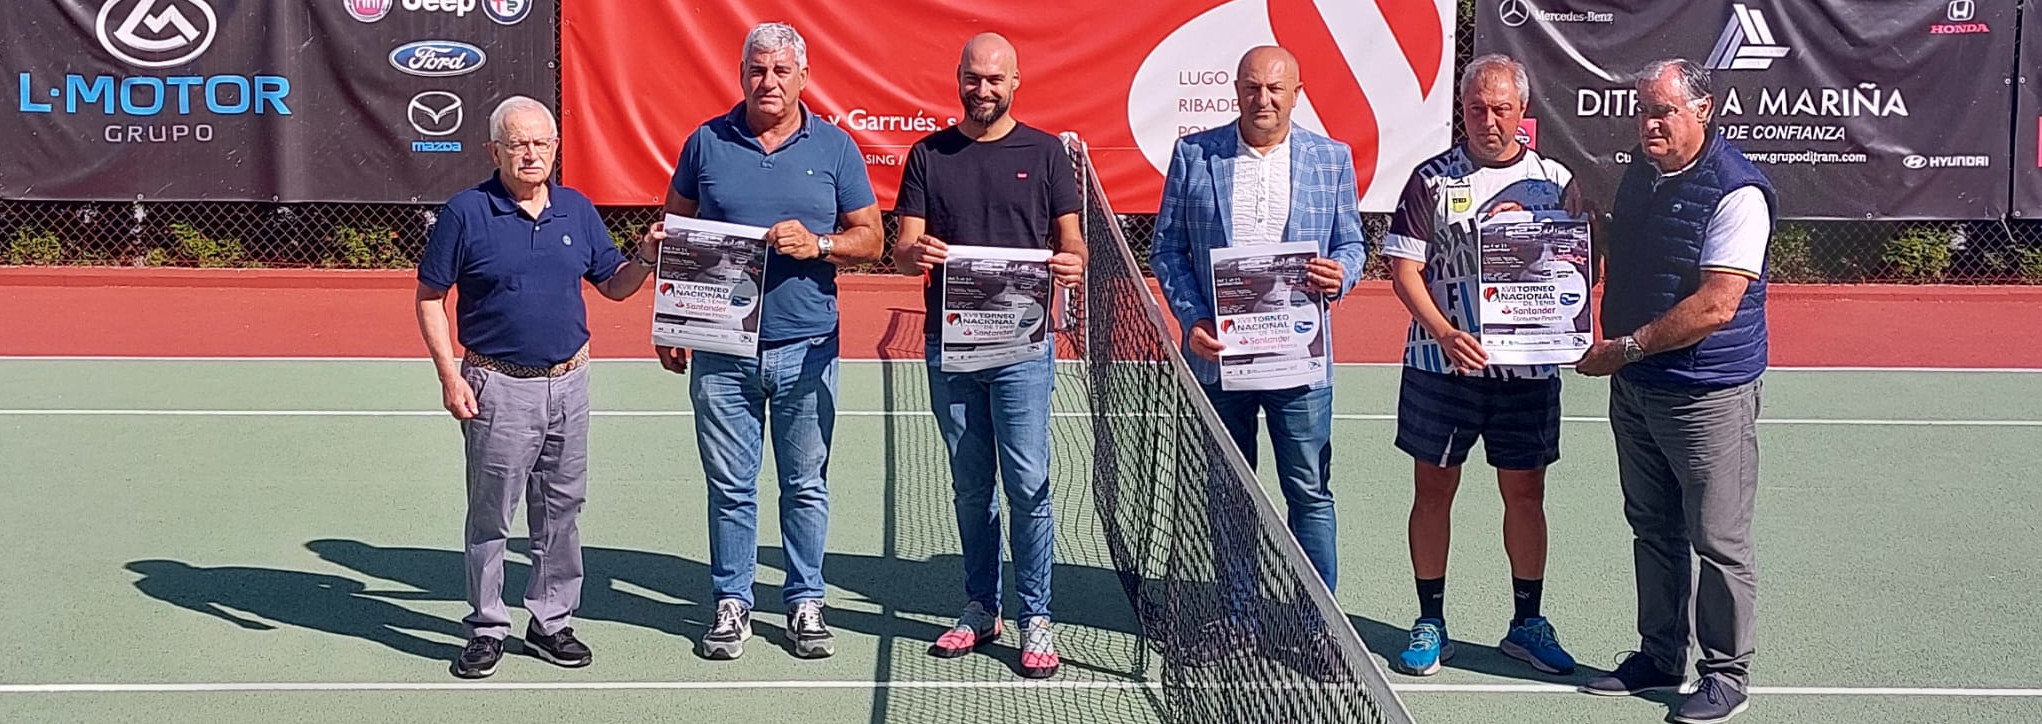 Presentación del XVIII Torneo Nacional de tenis Club Fluvial Lugo